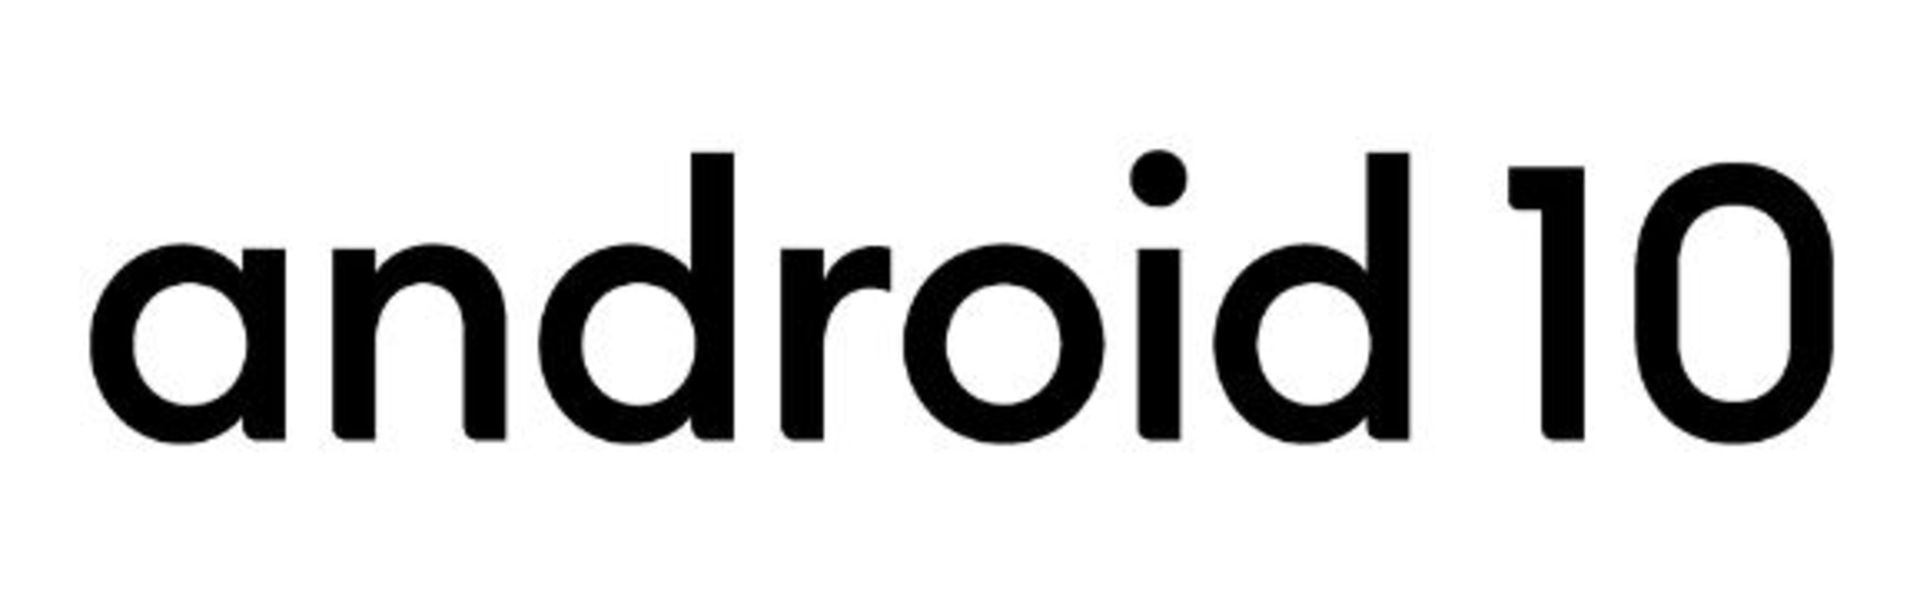 مرجع متخصصين ايران اندرويد ۱۰ / Android 10